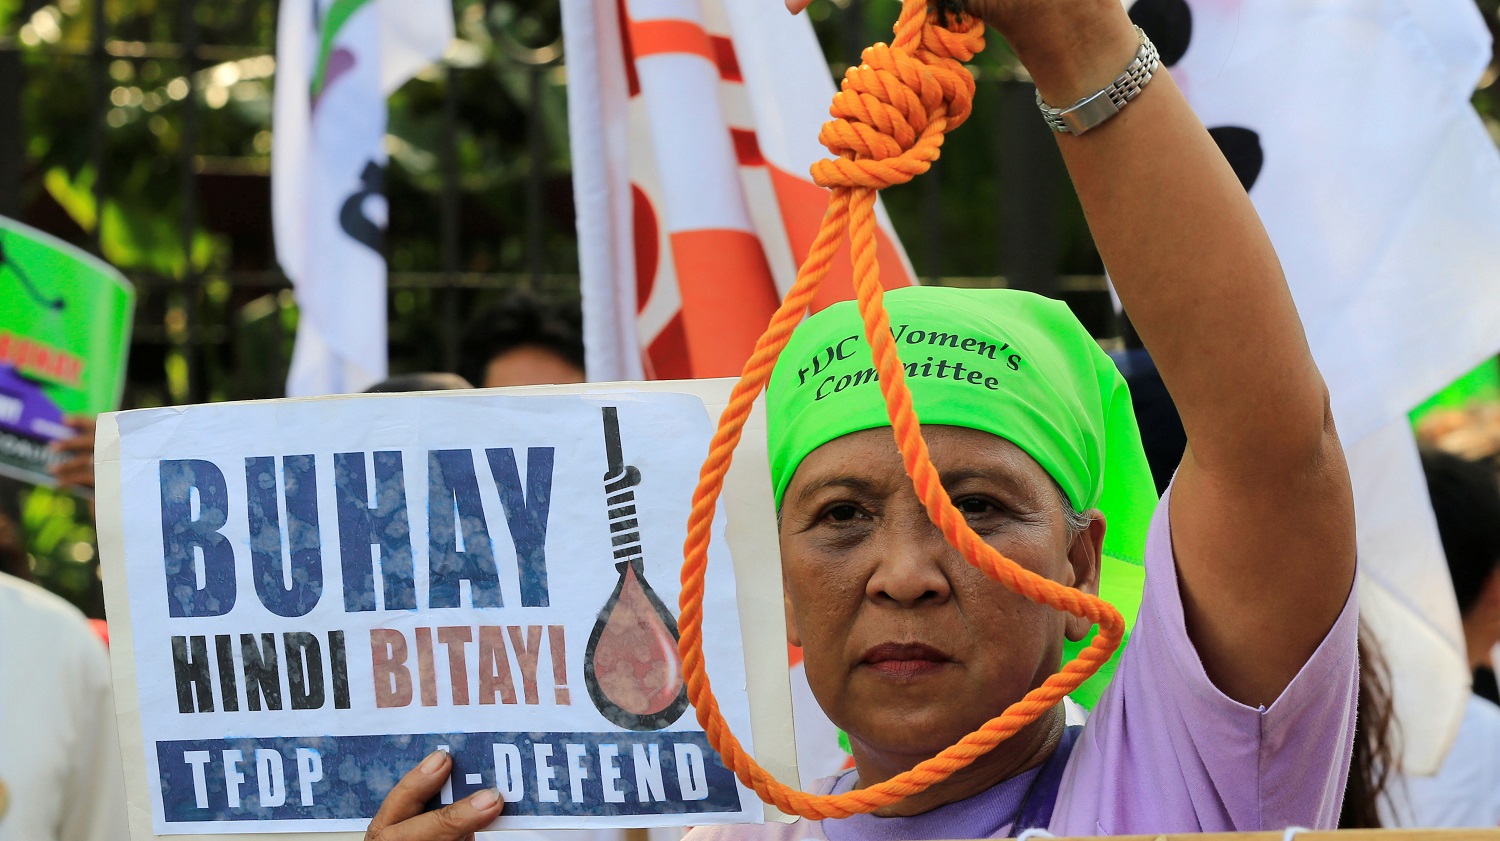 Manifestación contra la pena de muerte celebrada en Manila, Filipinas. La pancarta pone "¡Vida, no muerte!"